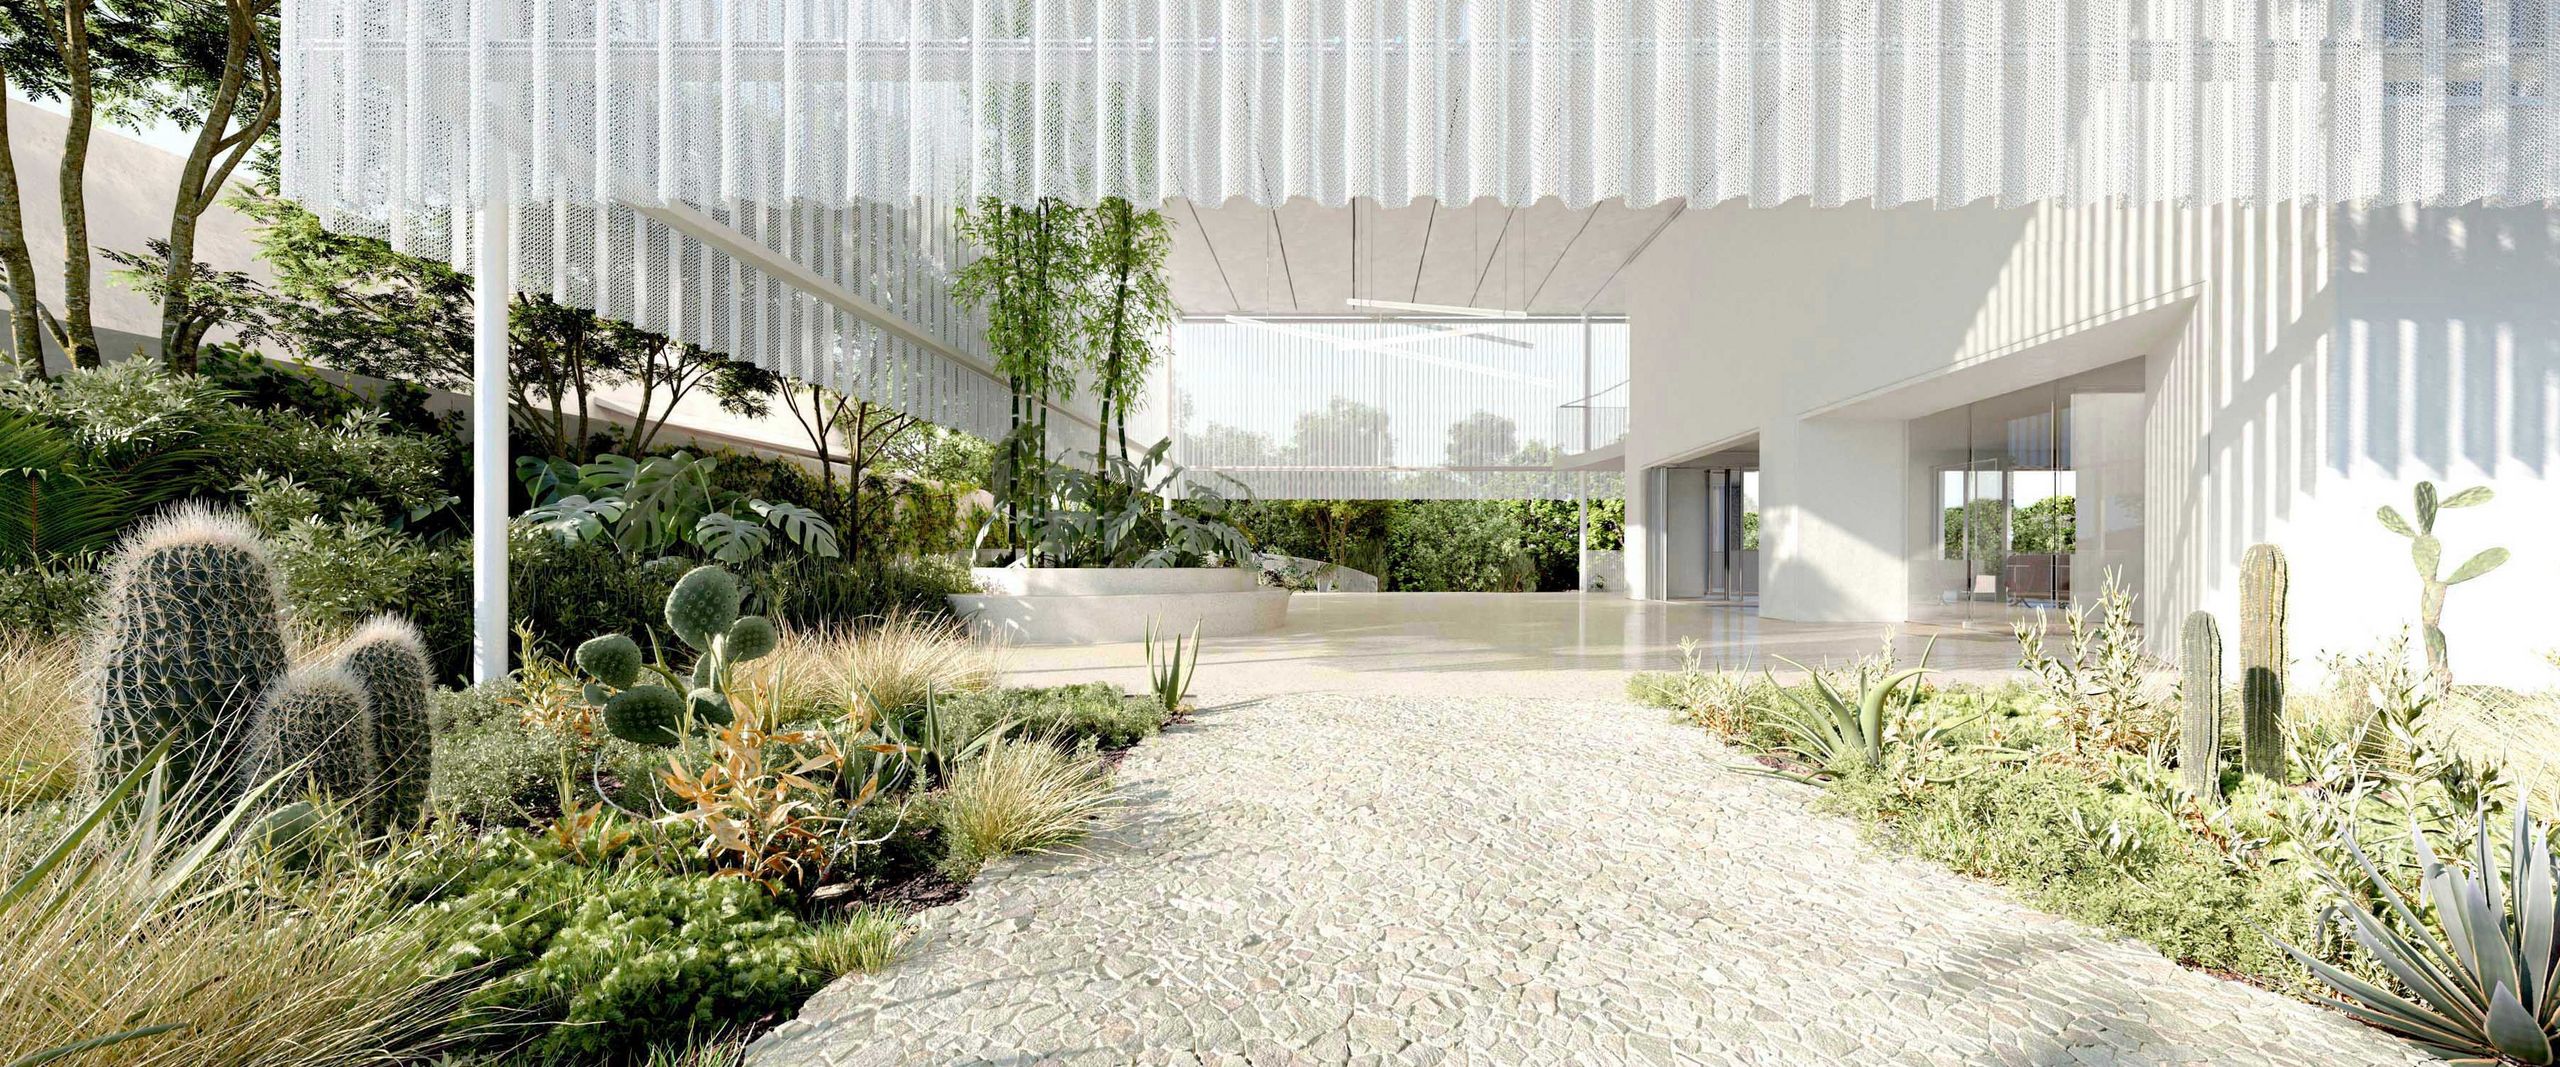 Das Bild zeigt den Ausschnitt eines modernen, weißen Gebäudes mit Weg und Grünbepflanzung am Rande